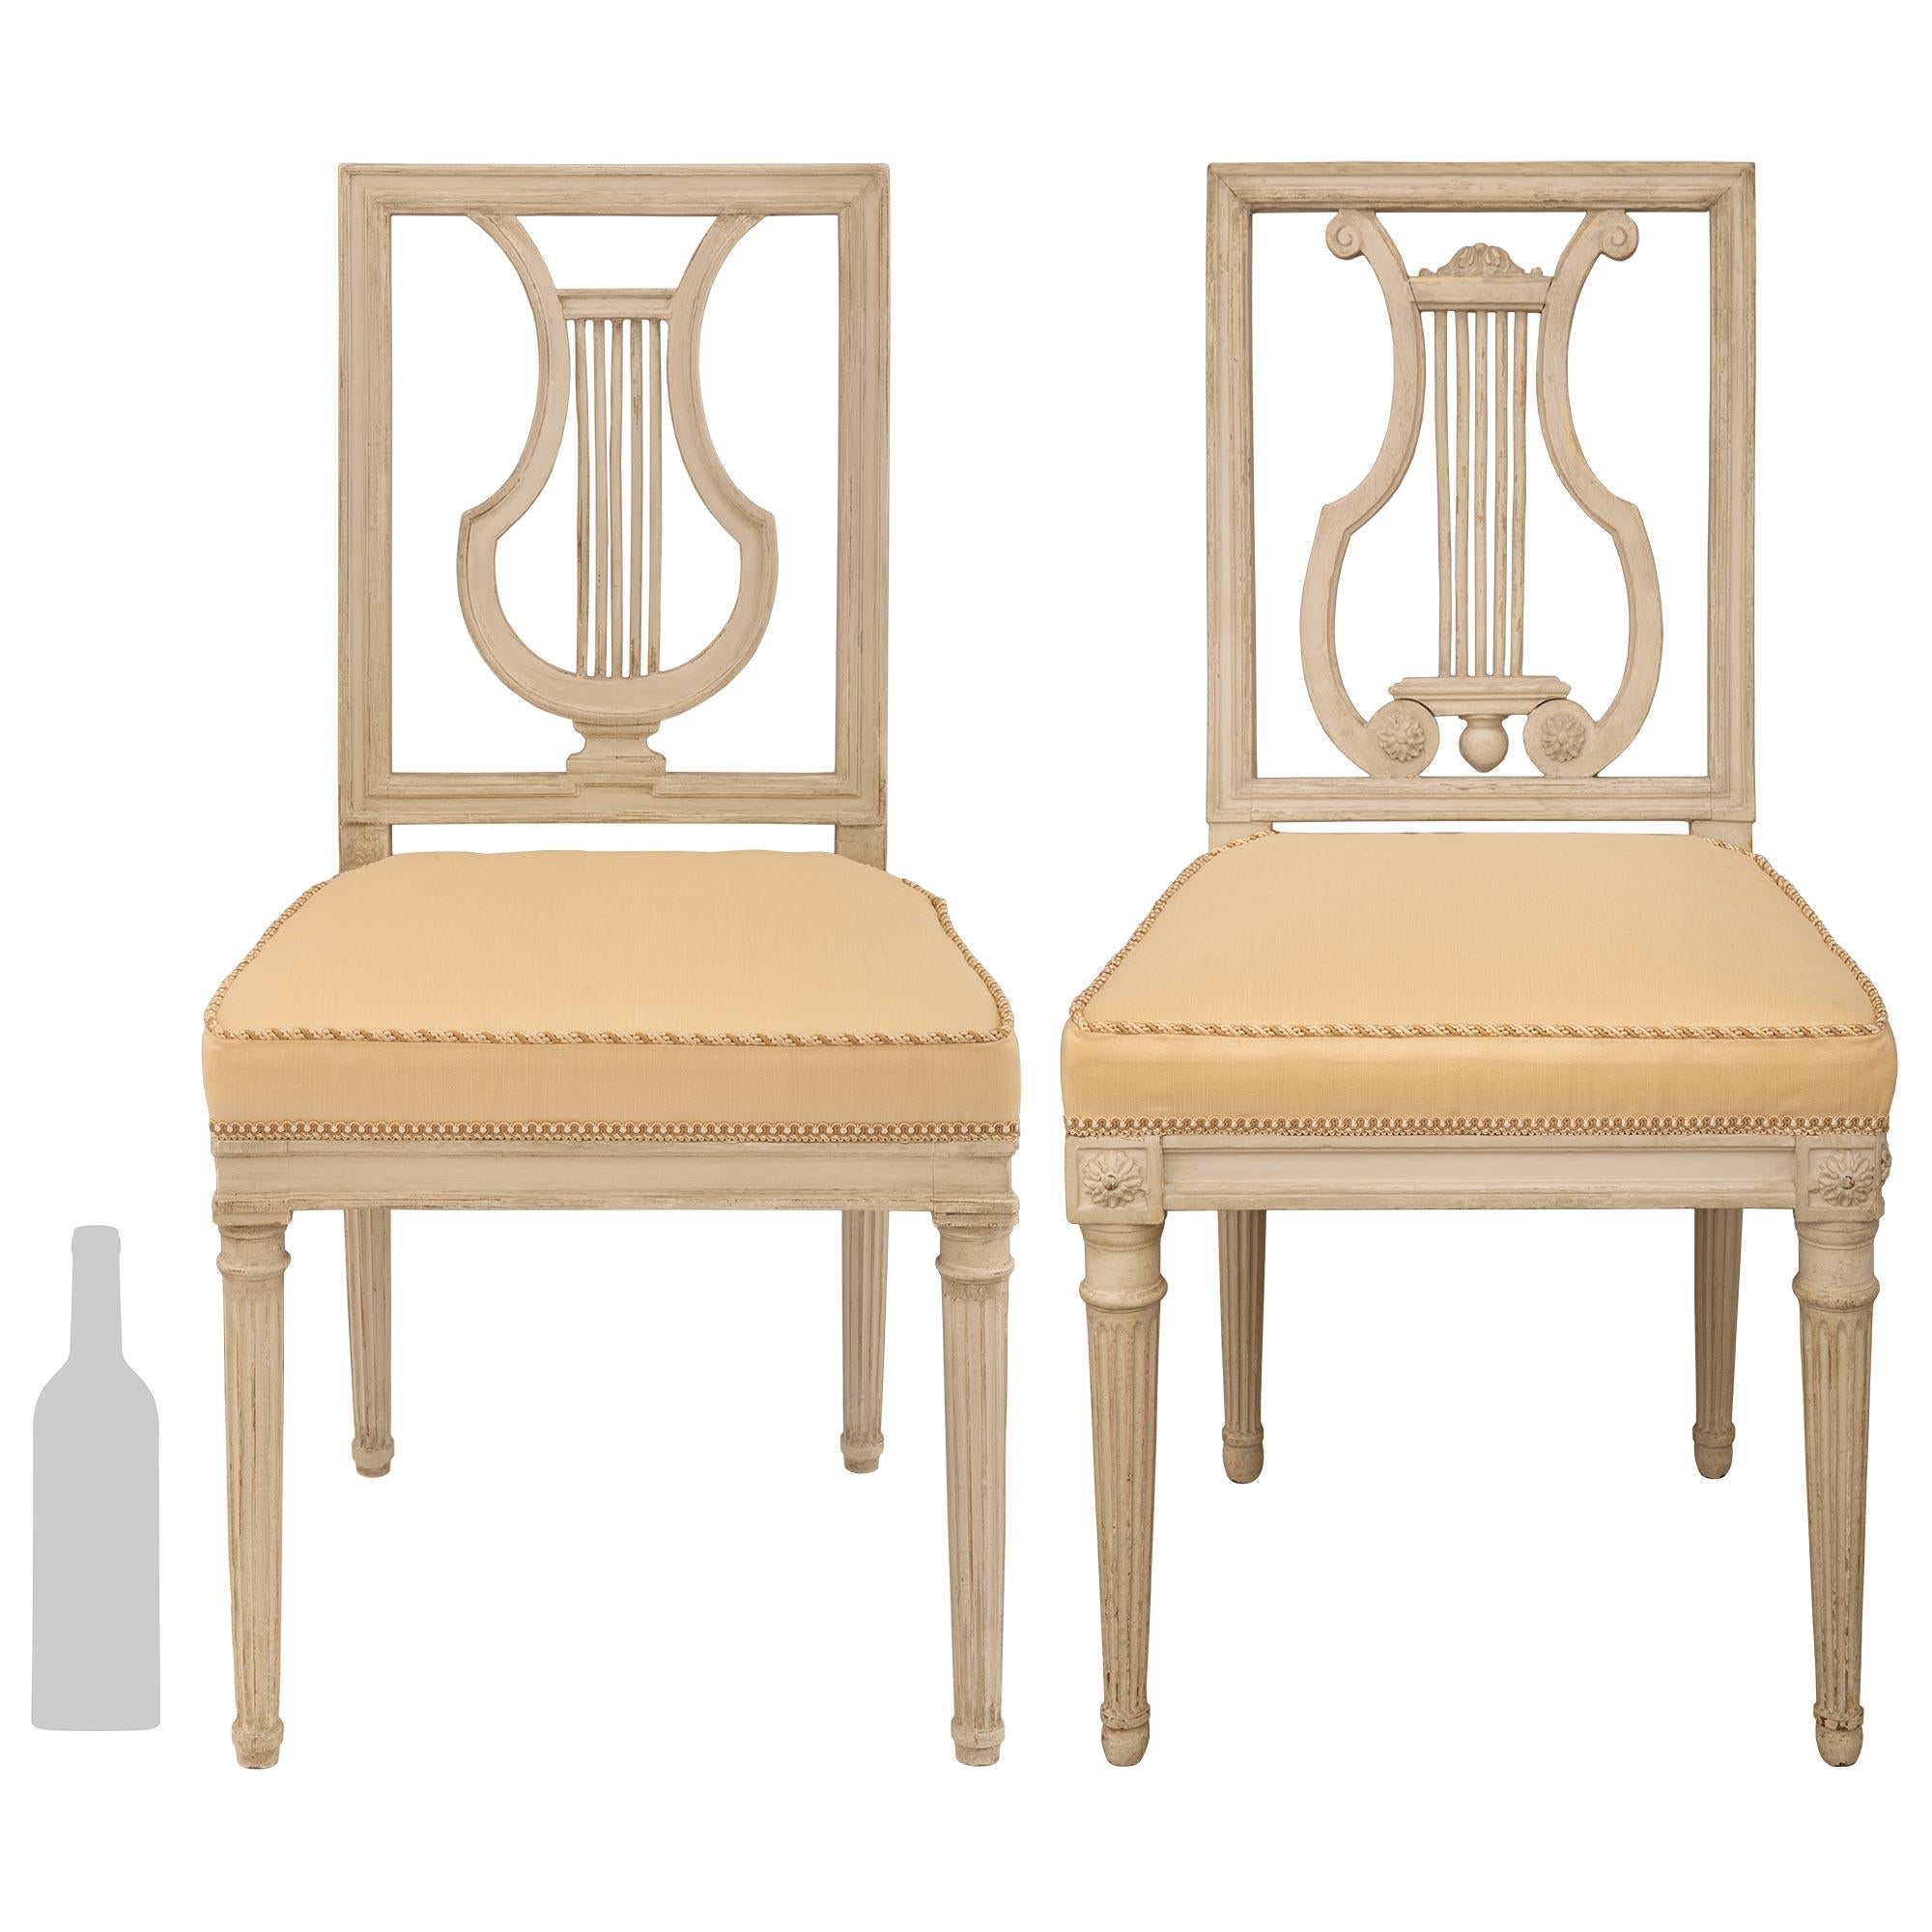 Ein sehr eleganter Satz von zwölf französischen Esszimmerstühlen aus dem 18. Jahrhundert im Stil Louis XVI. Jeder patinierte grau/cremefarbene Stuhl steht auf runden, konisch zulaufenden, kannelierten Beinen mit geschnitzten Bändern oben und unten.